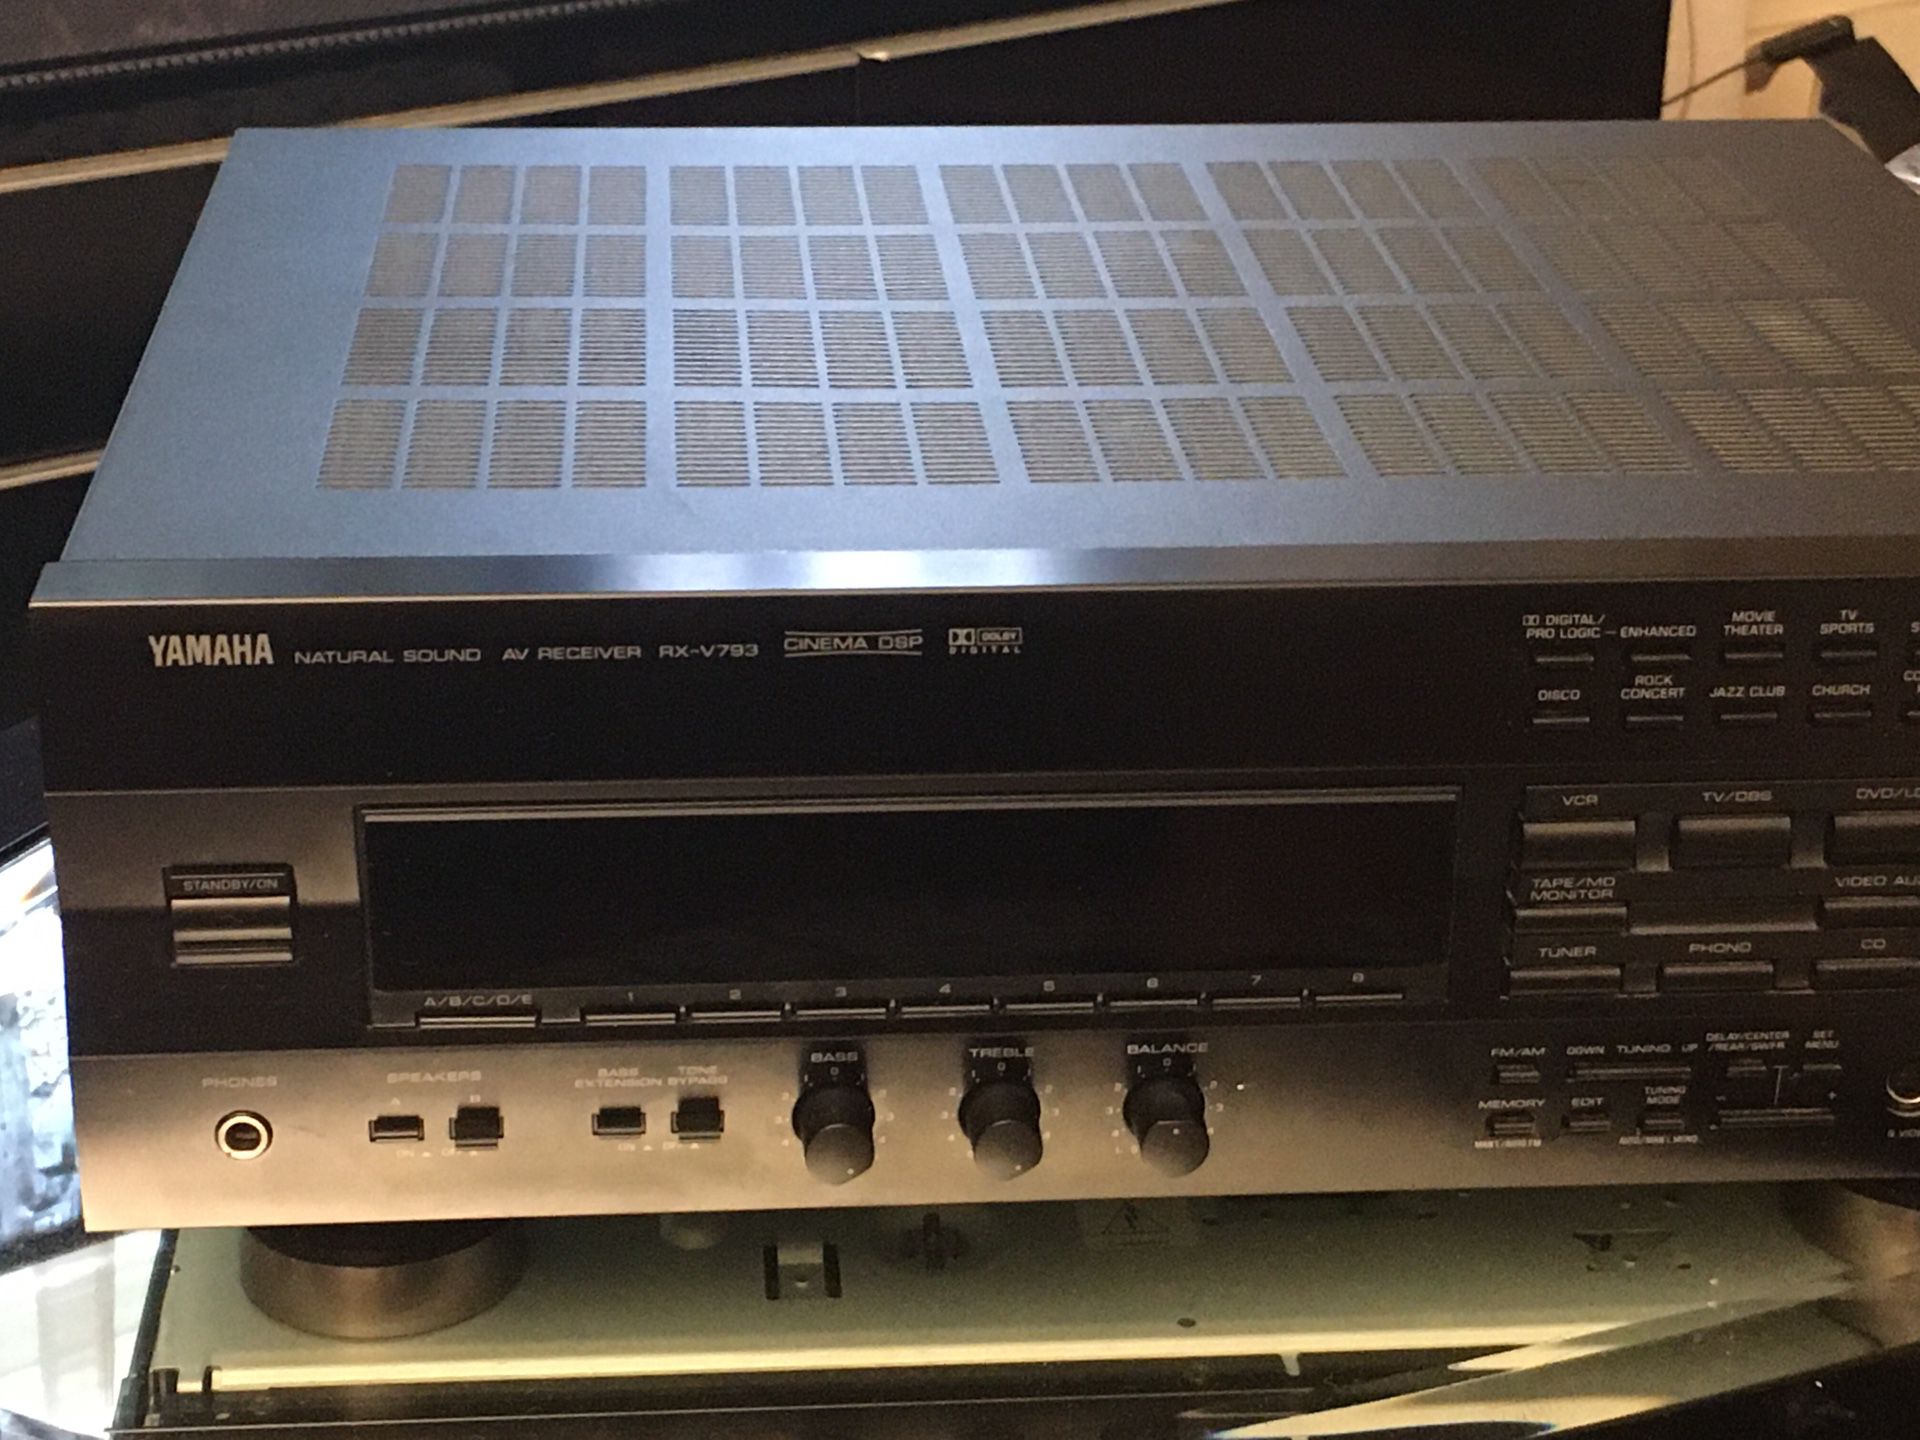 Yamaha natural sound av receiver RX-V793